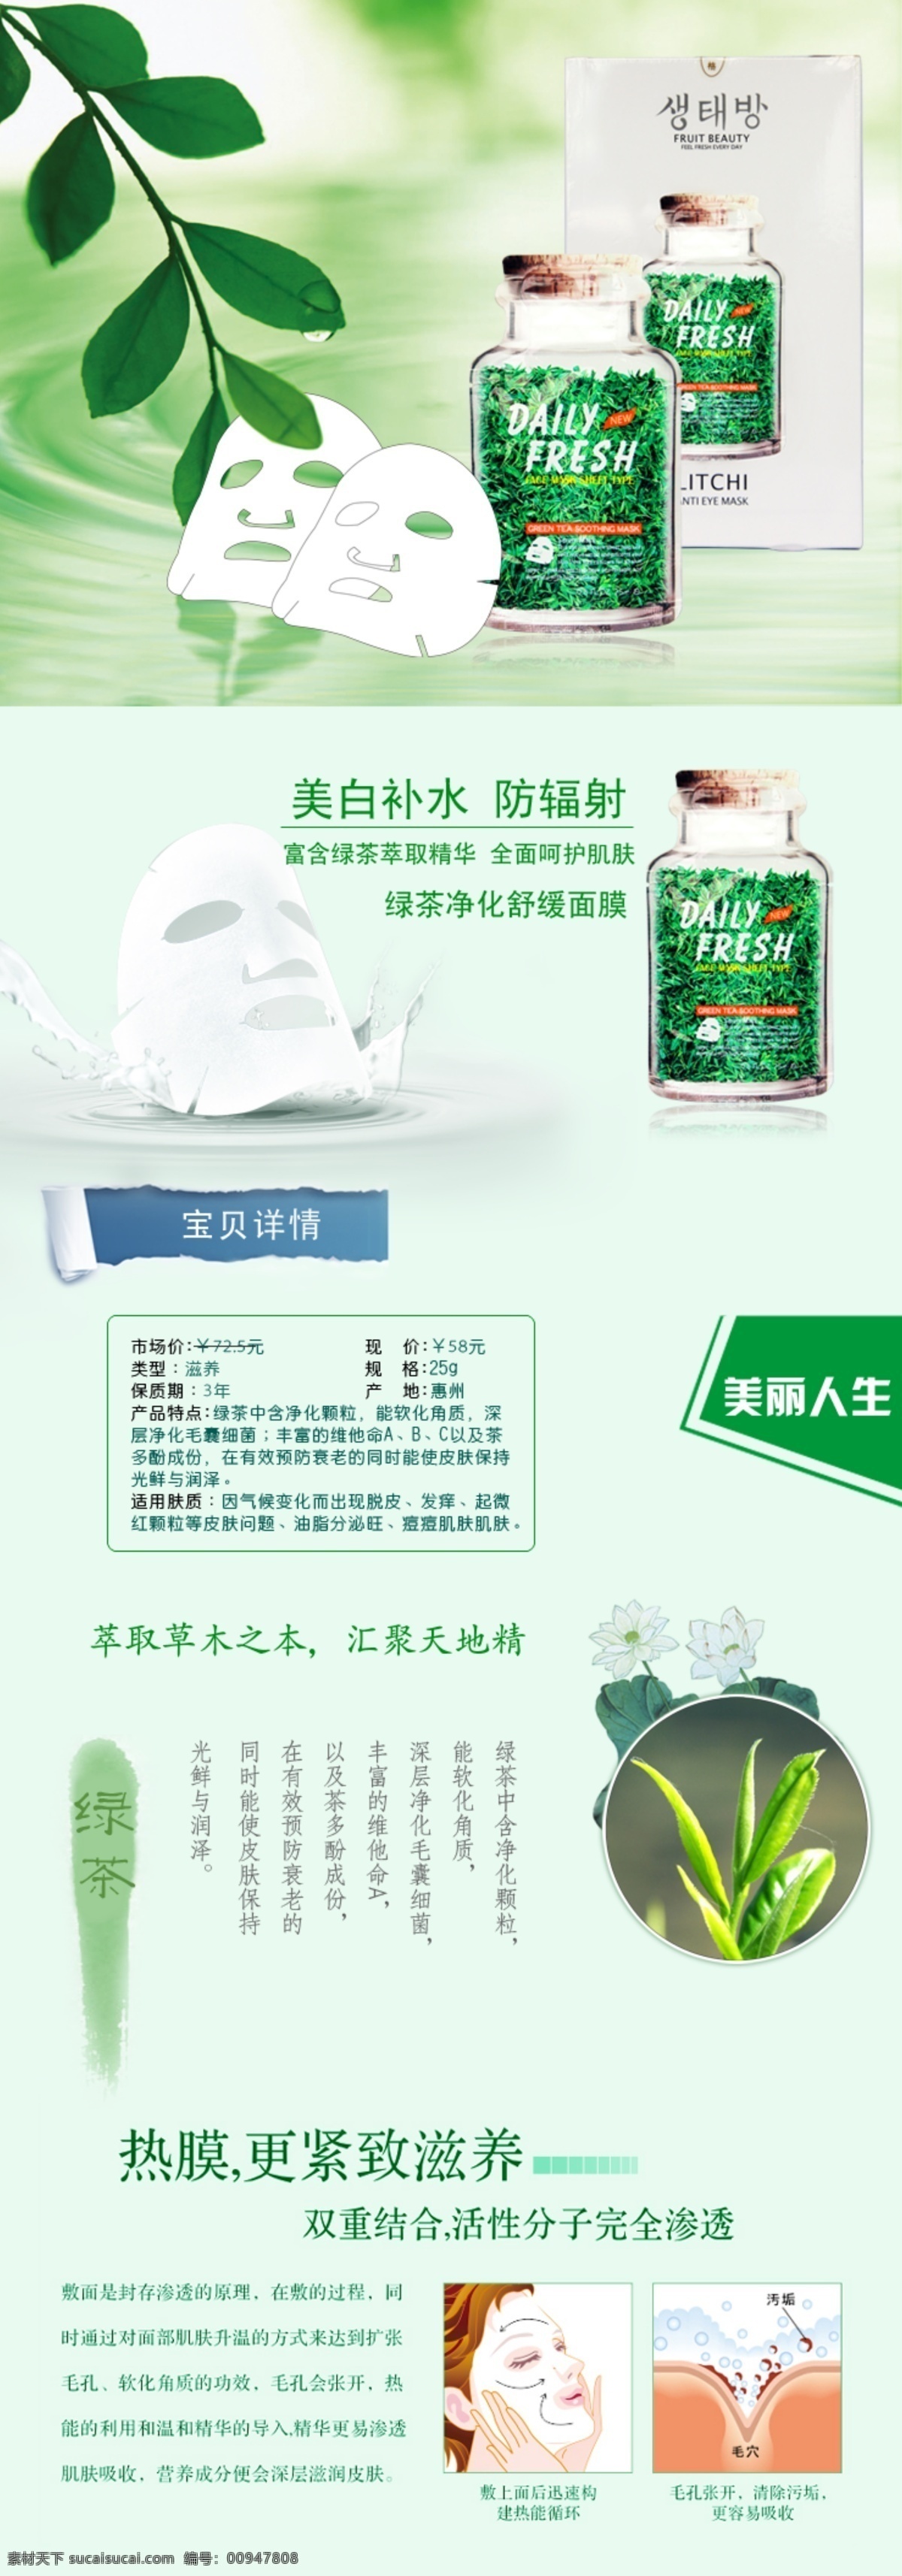 绿茶面膜广告 淘宝描述 绿茶面膜 面膜 茶叶 绿叶 面膜描述 牛奶面膜 中文模版 网页模板 源文件